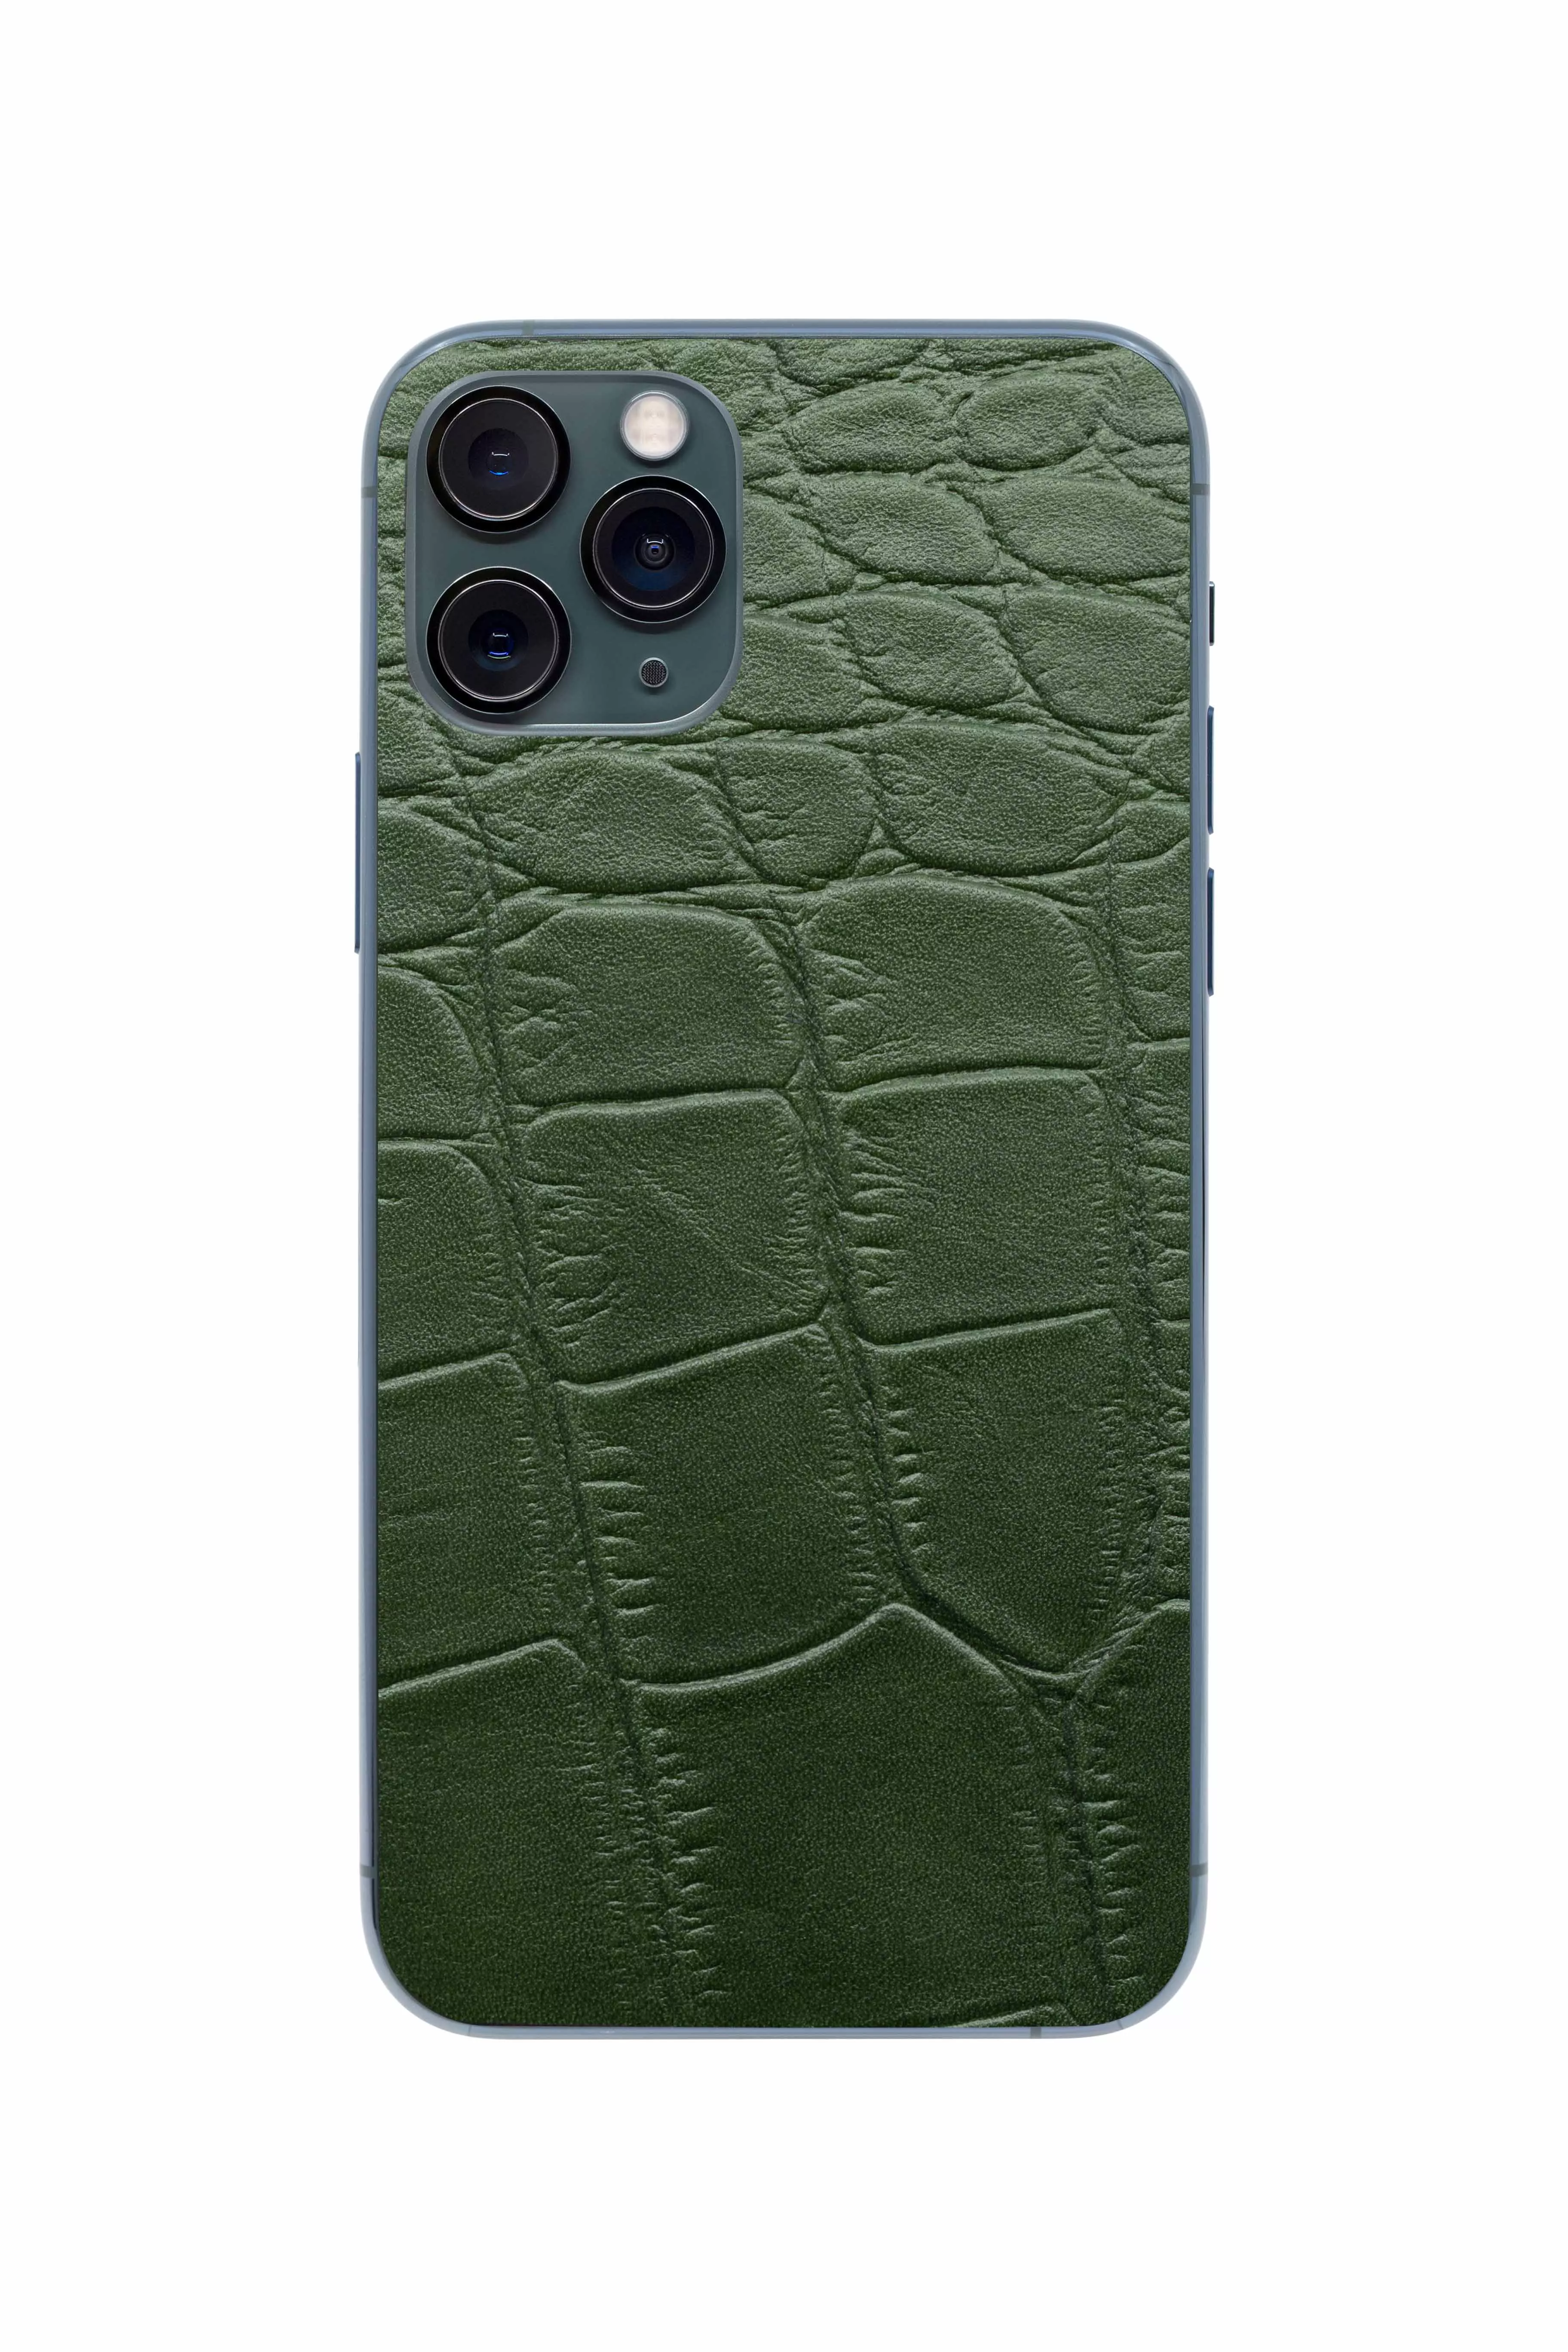 Защитная наклейка из натуральной кожи для iPhone 11 Pro, Вид Зеленый 3. Вид 1